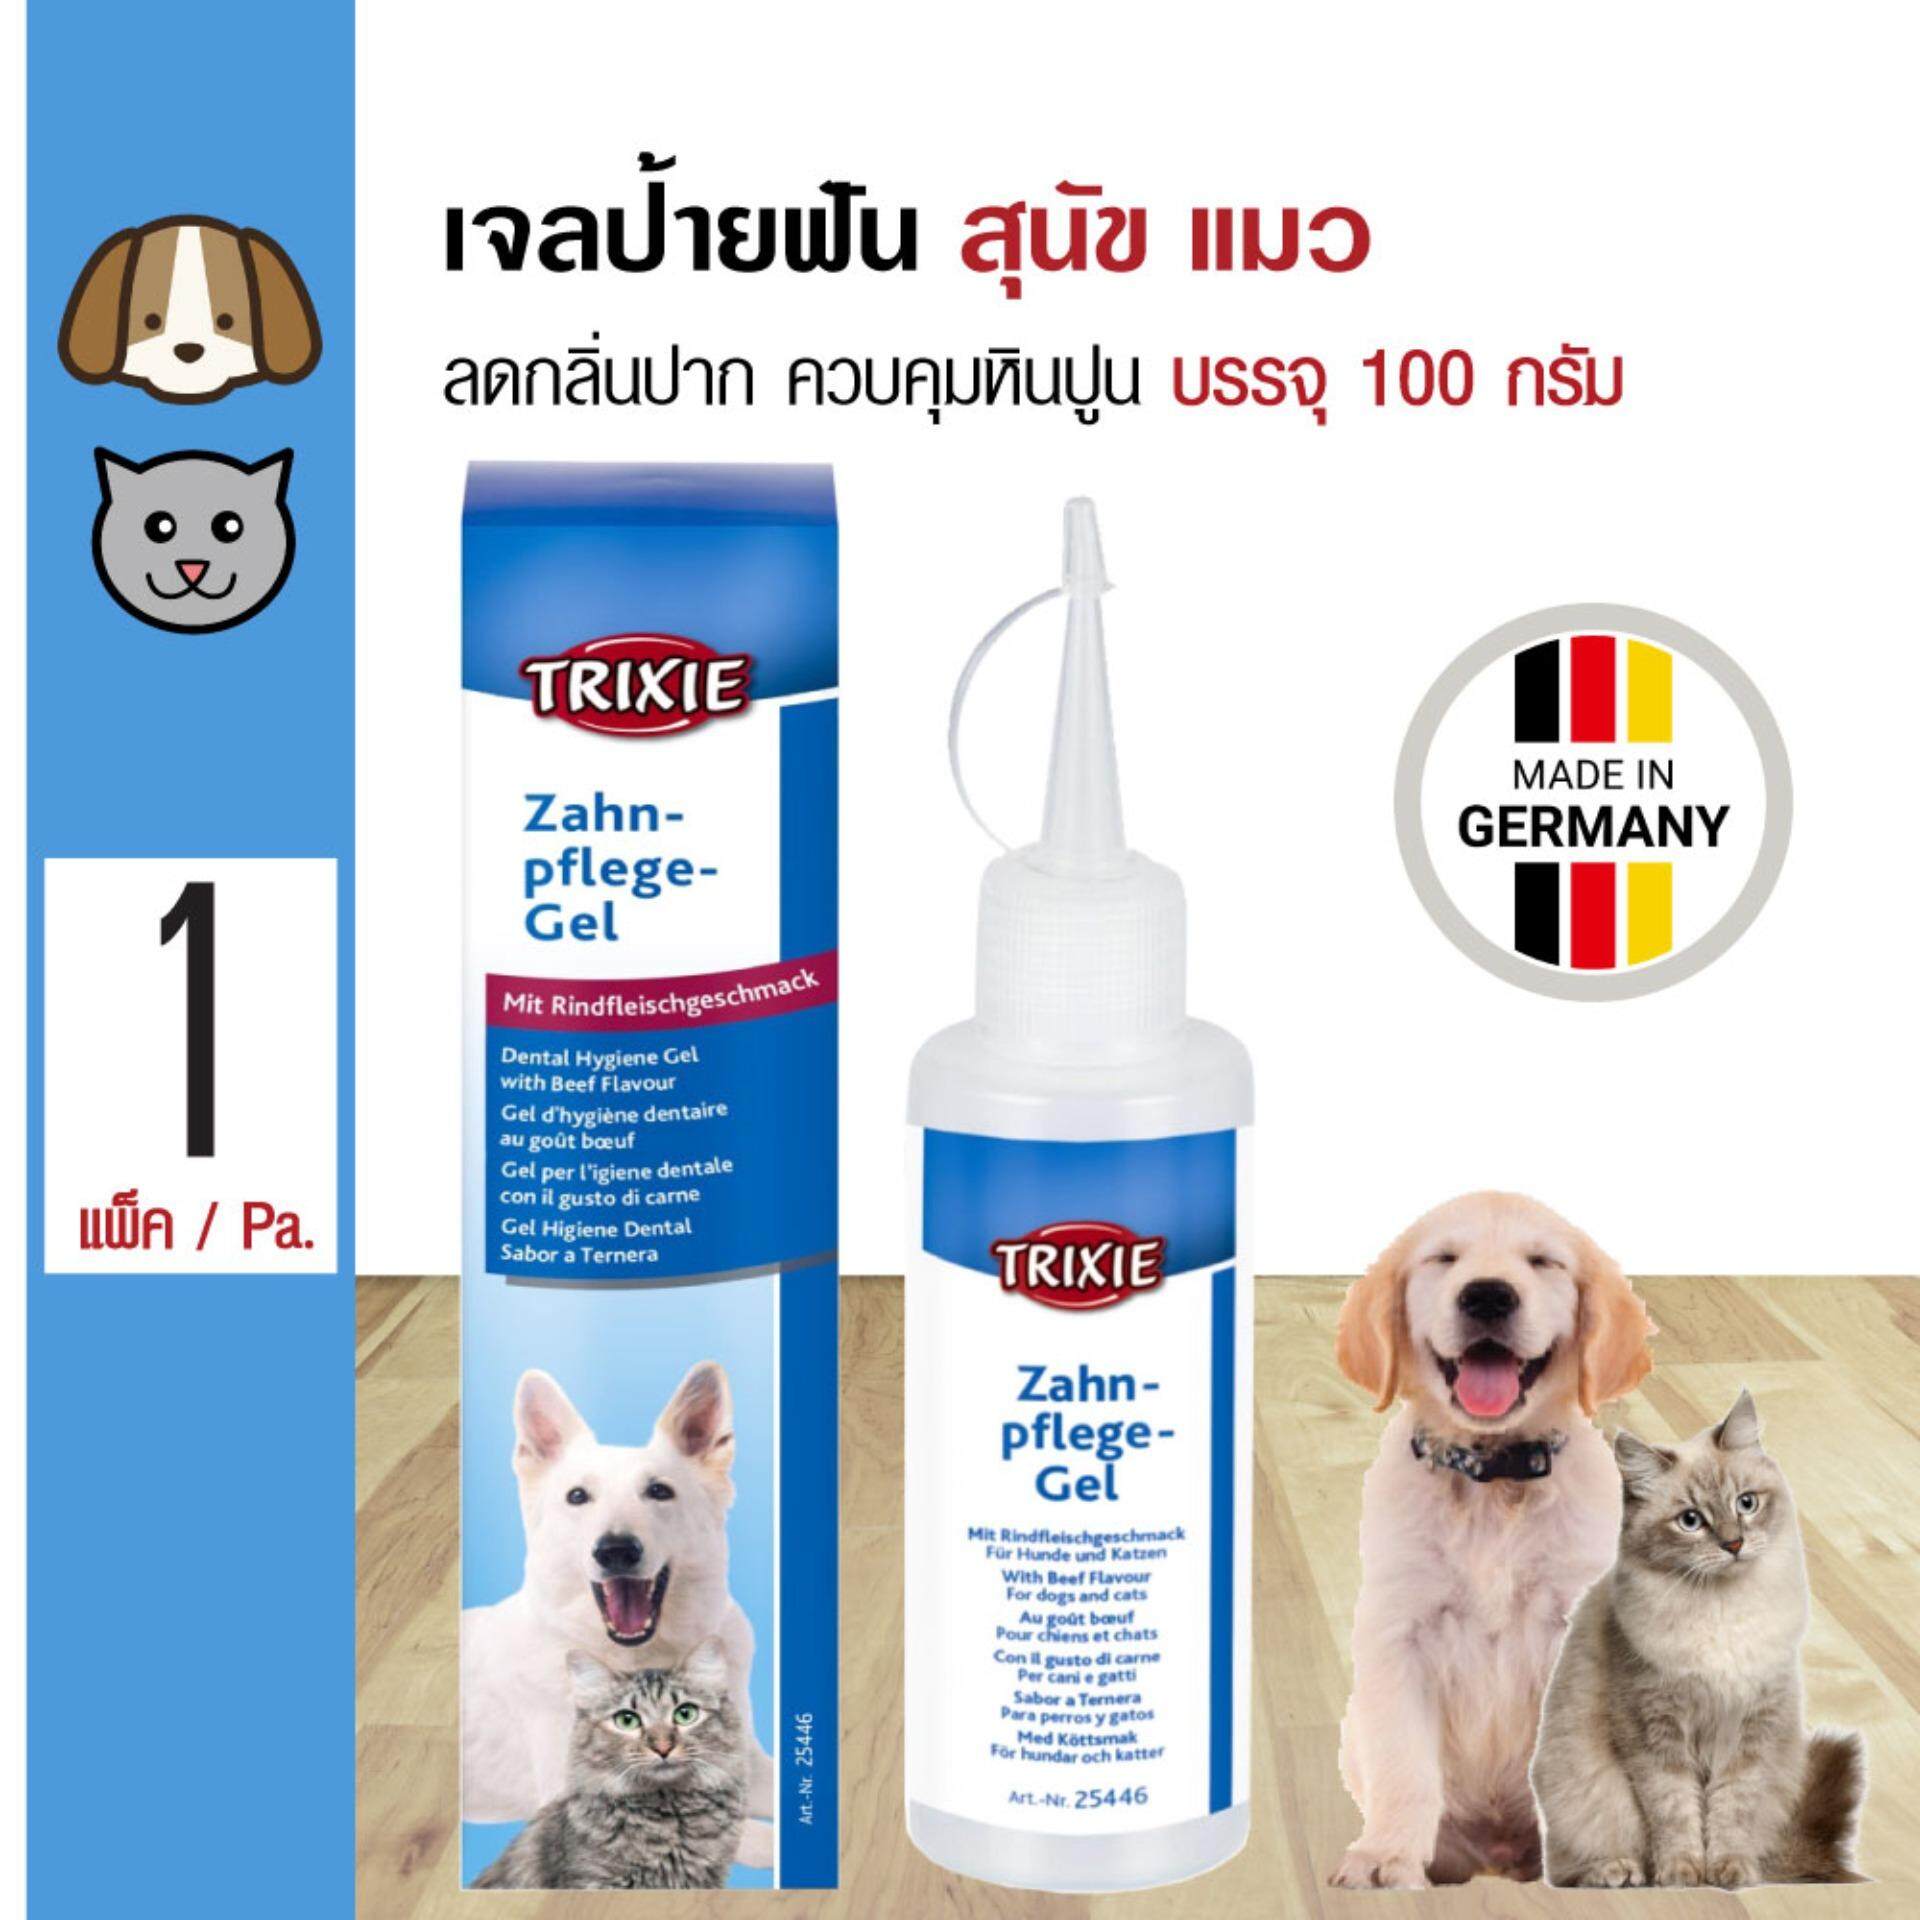 Trixie Dental Gel เจลป้ายฟัน ช่วยควบคุมหินปูน ลดกลิ่นปาก ลดแบคทีเรีย สำหรับสุนัขและแมว (100 กรัม/ขวด)